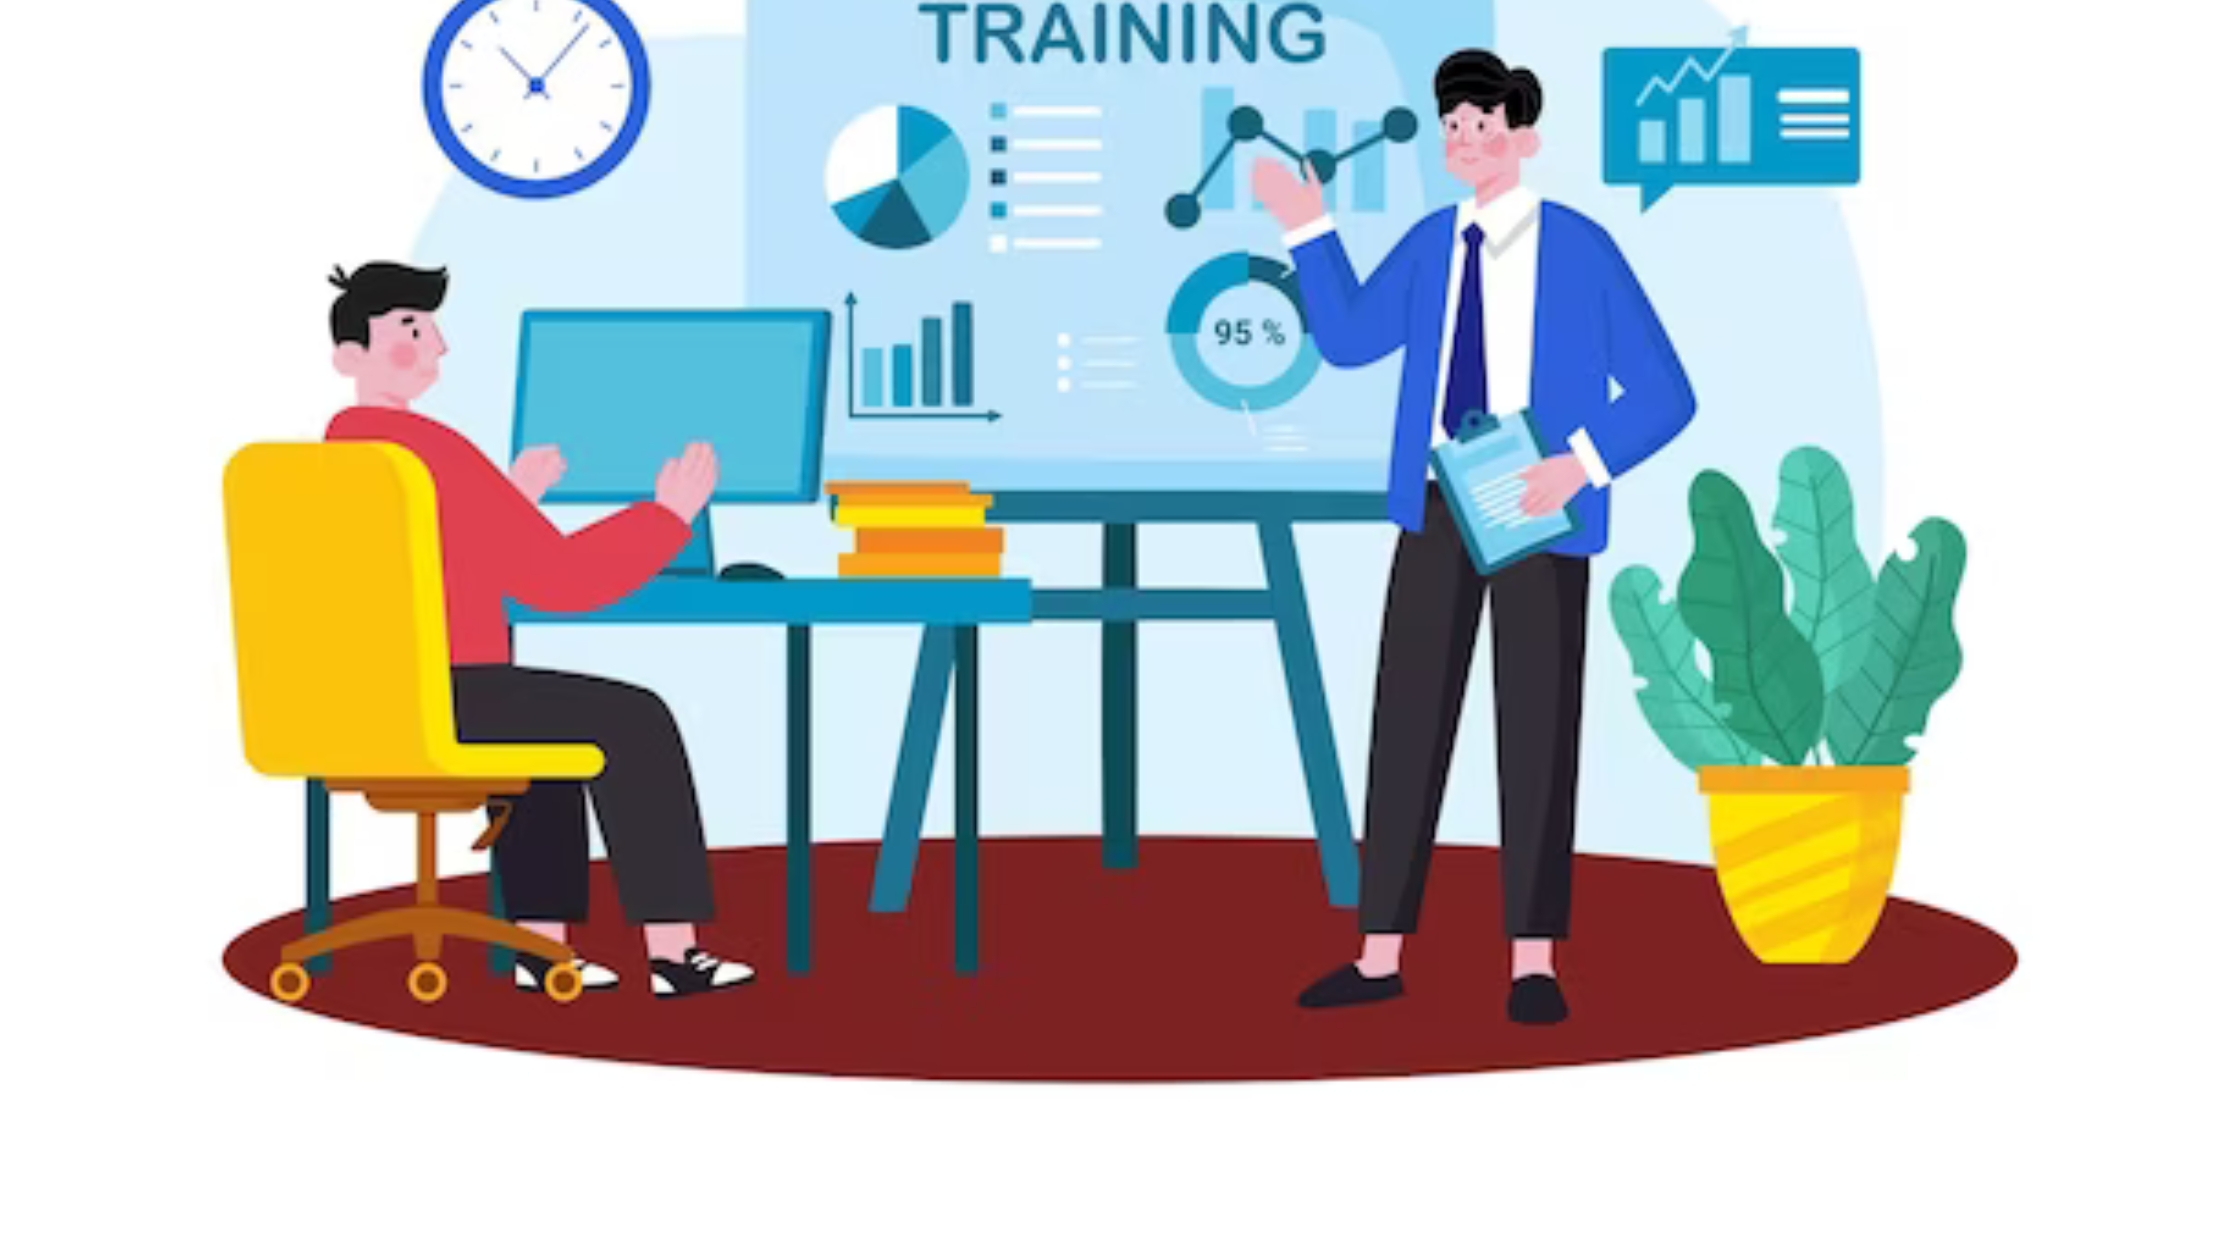 web based training management software